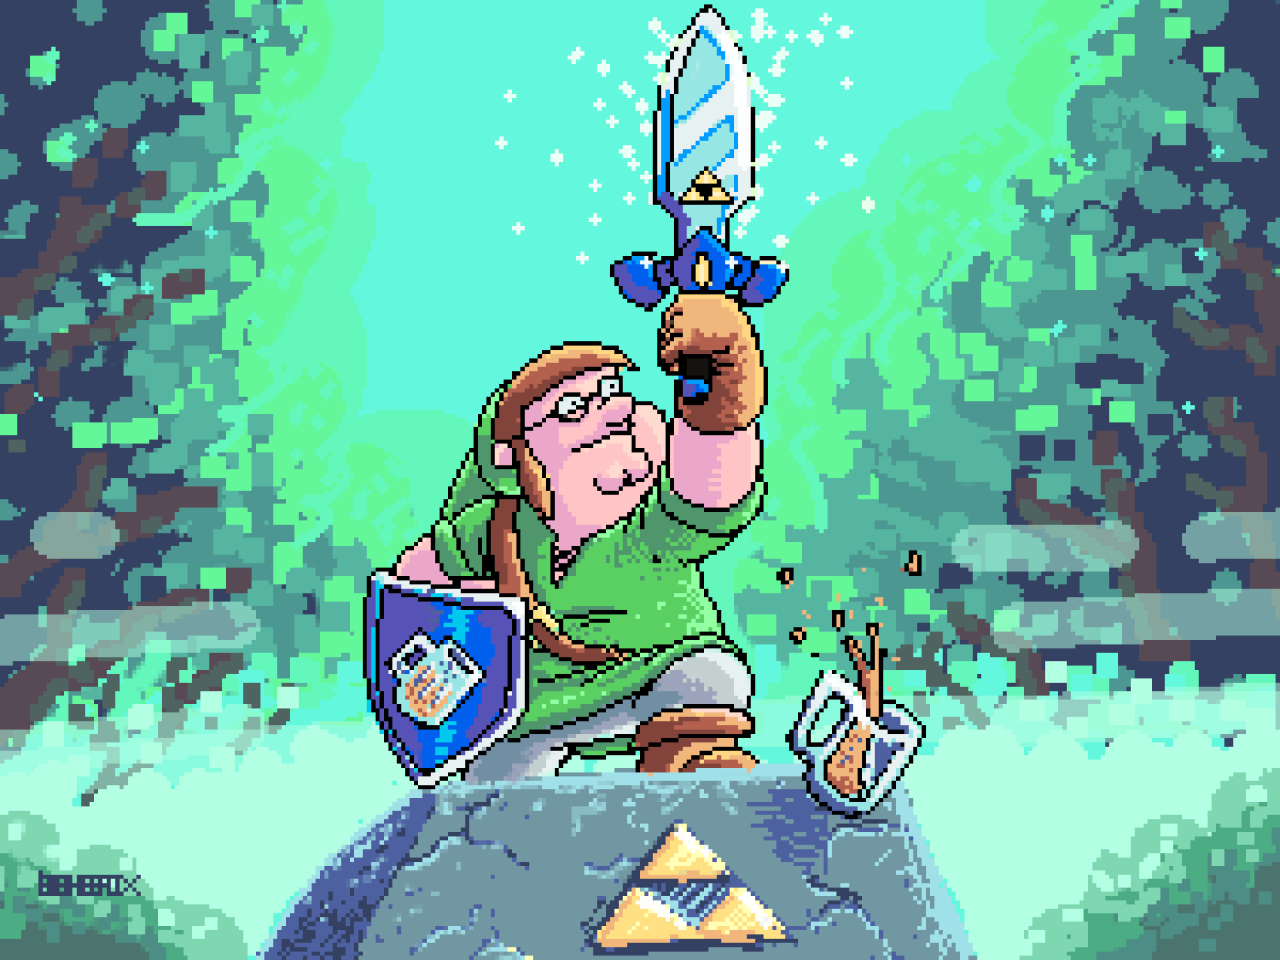 Link's Awakening pixel art 8-bit scene painting by thepixeldad